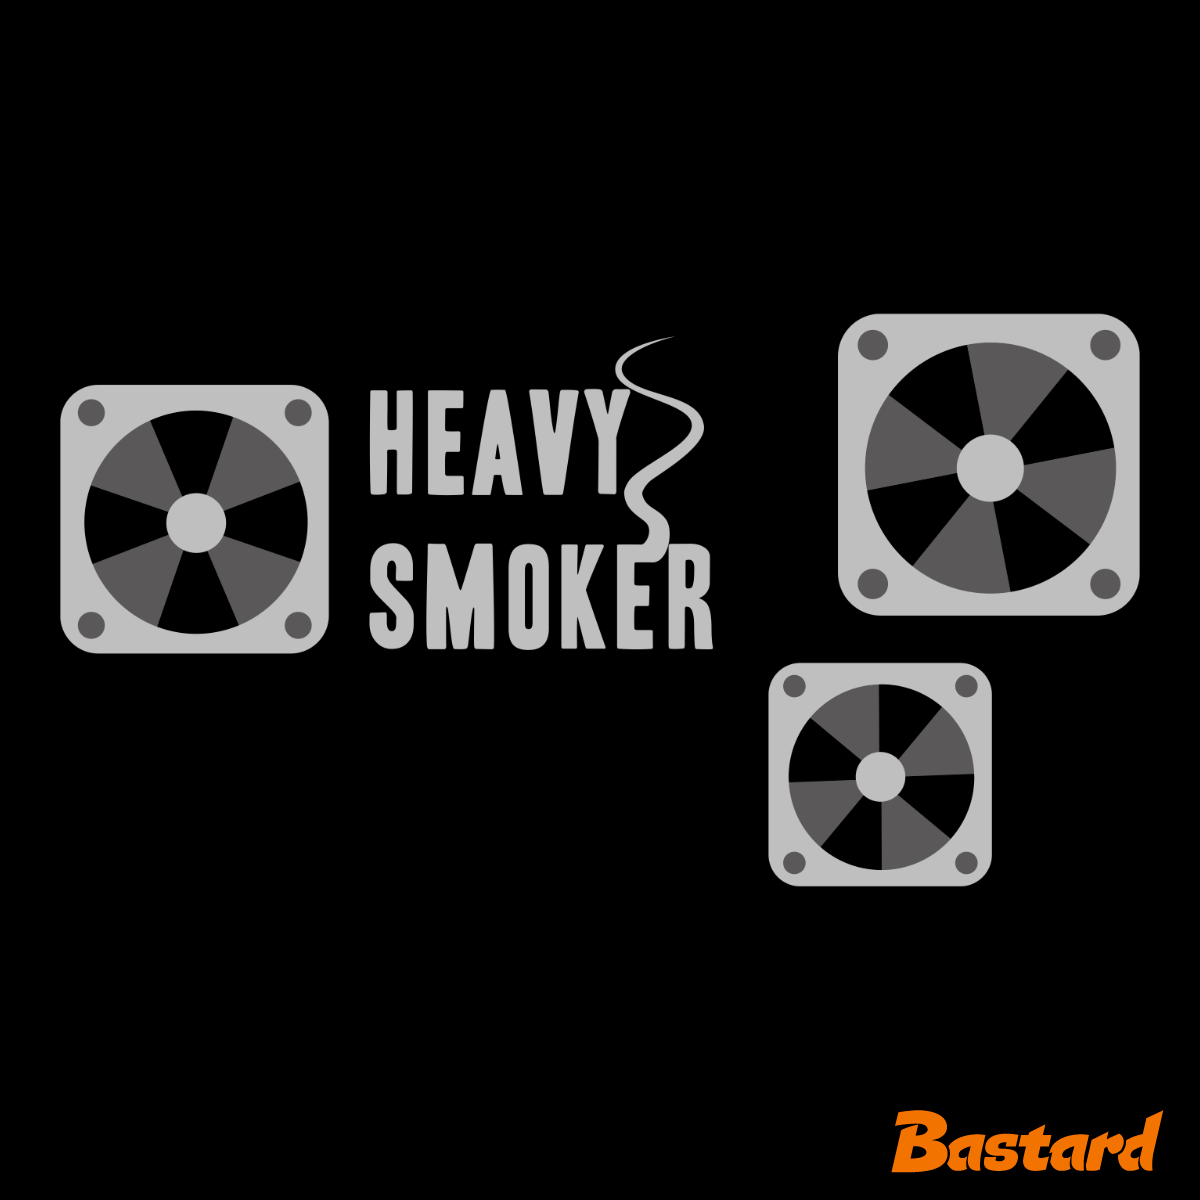 Heavy smoker